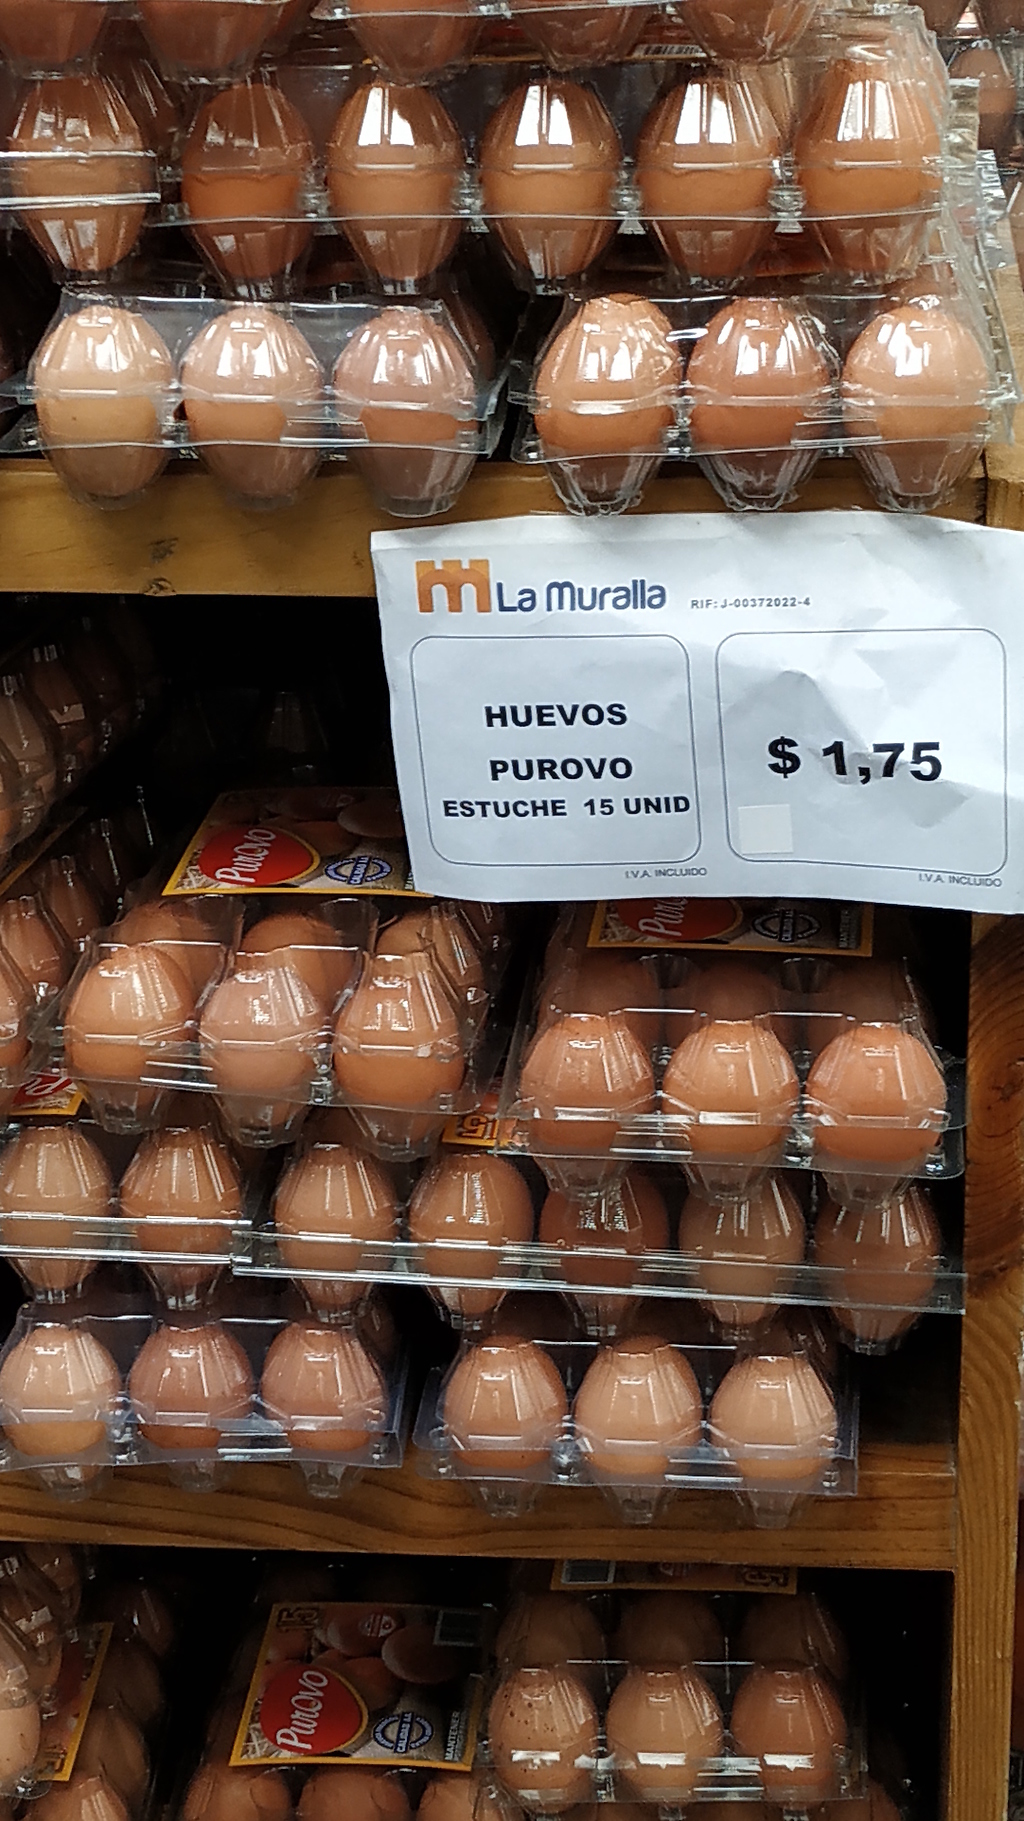 Estos son precios no actualizados, no sabemos a cómo se cotiza el cartón de huevos en este comercio